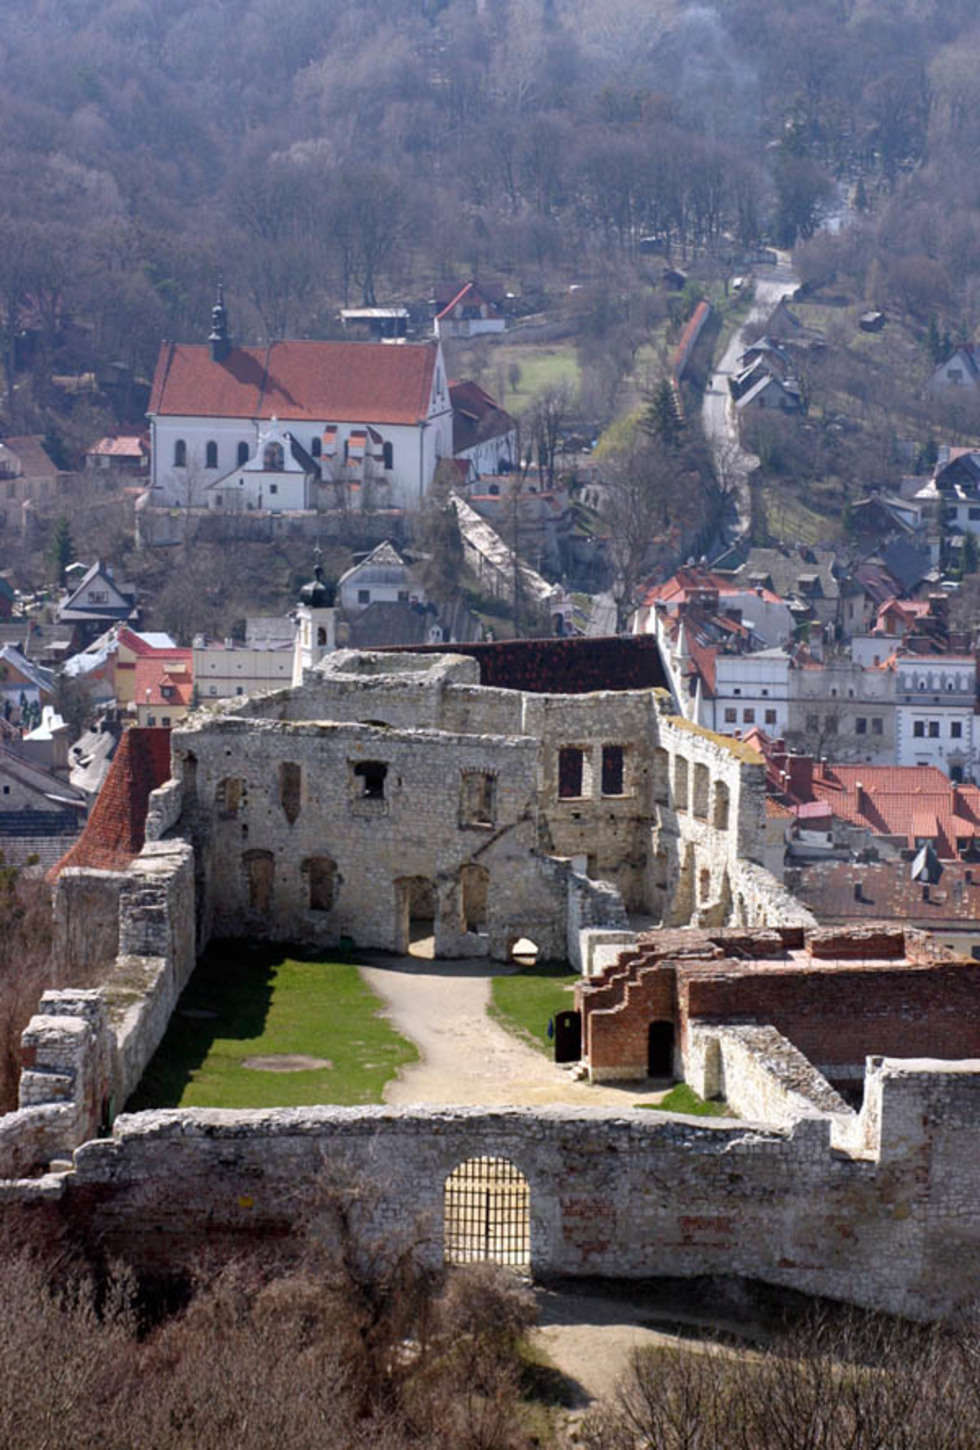  Jeśli chcesz oddac glos na <b> Ruiny zamku w Kazimierzu Dolnym             </b> wyślij SMS-a o treści <b>DW.MIEJSCE57</b> pod numer 71051. Koszt SMS-a 1 zl + Vat.